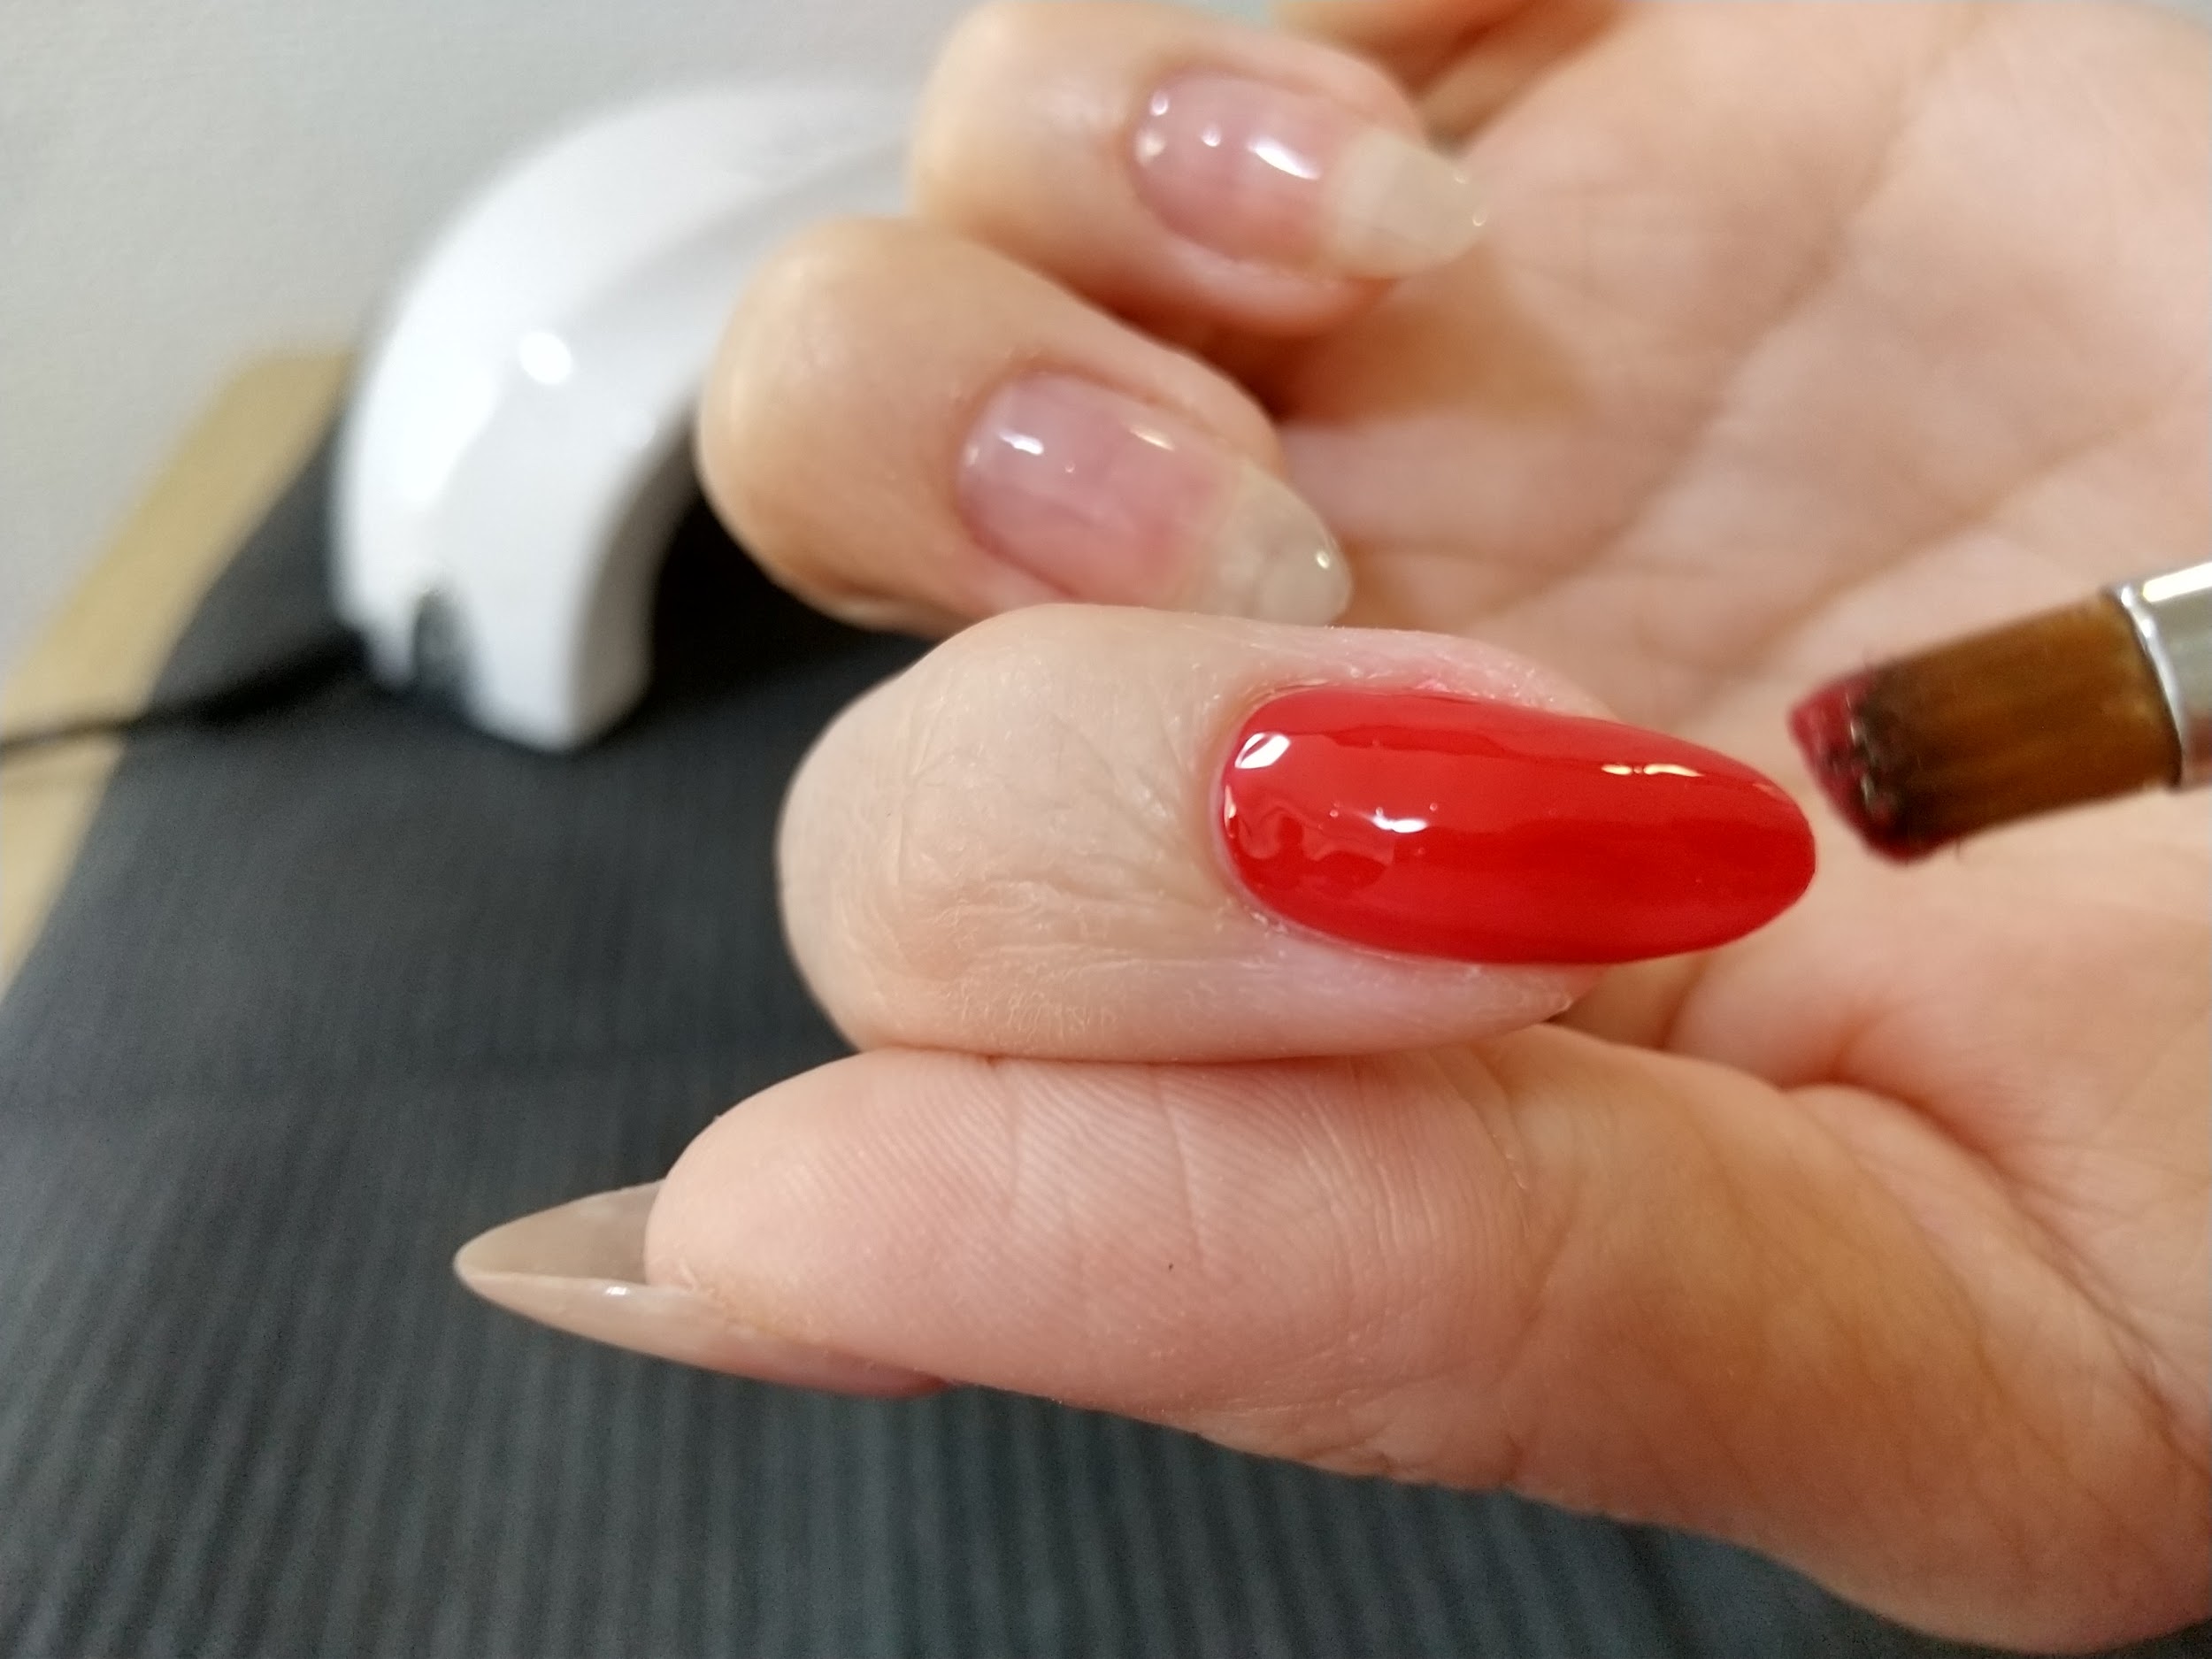 カラージェル工程-爪全体を赤いカラージェルで塗布